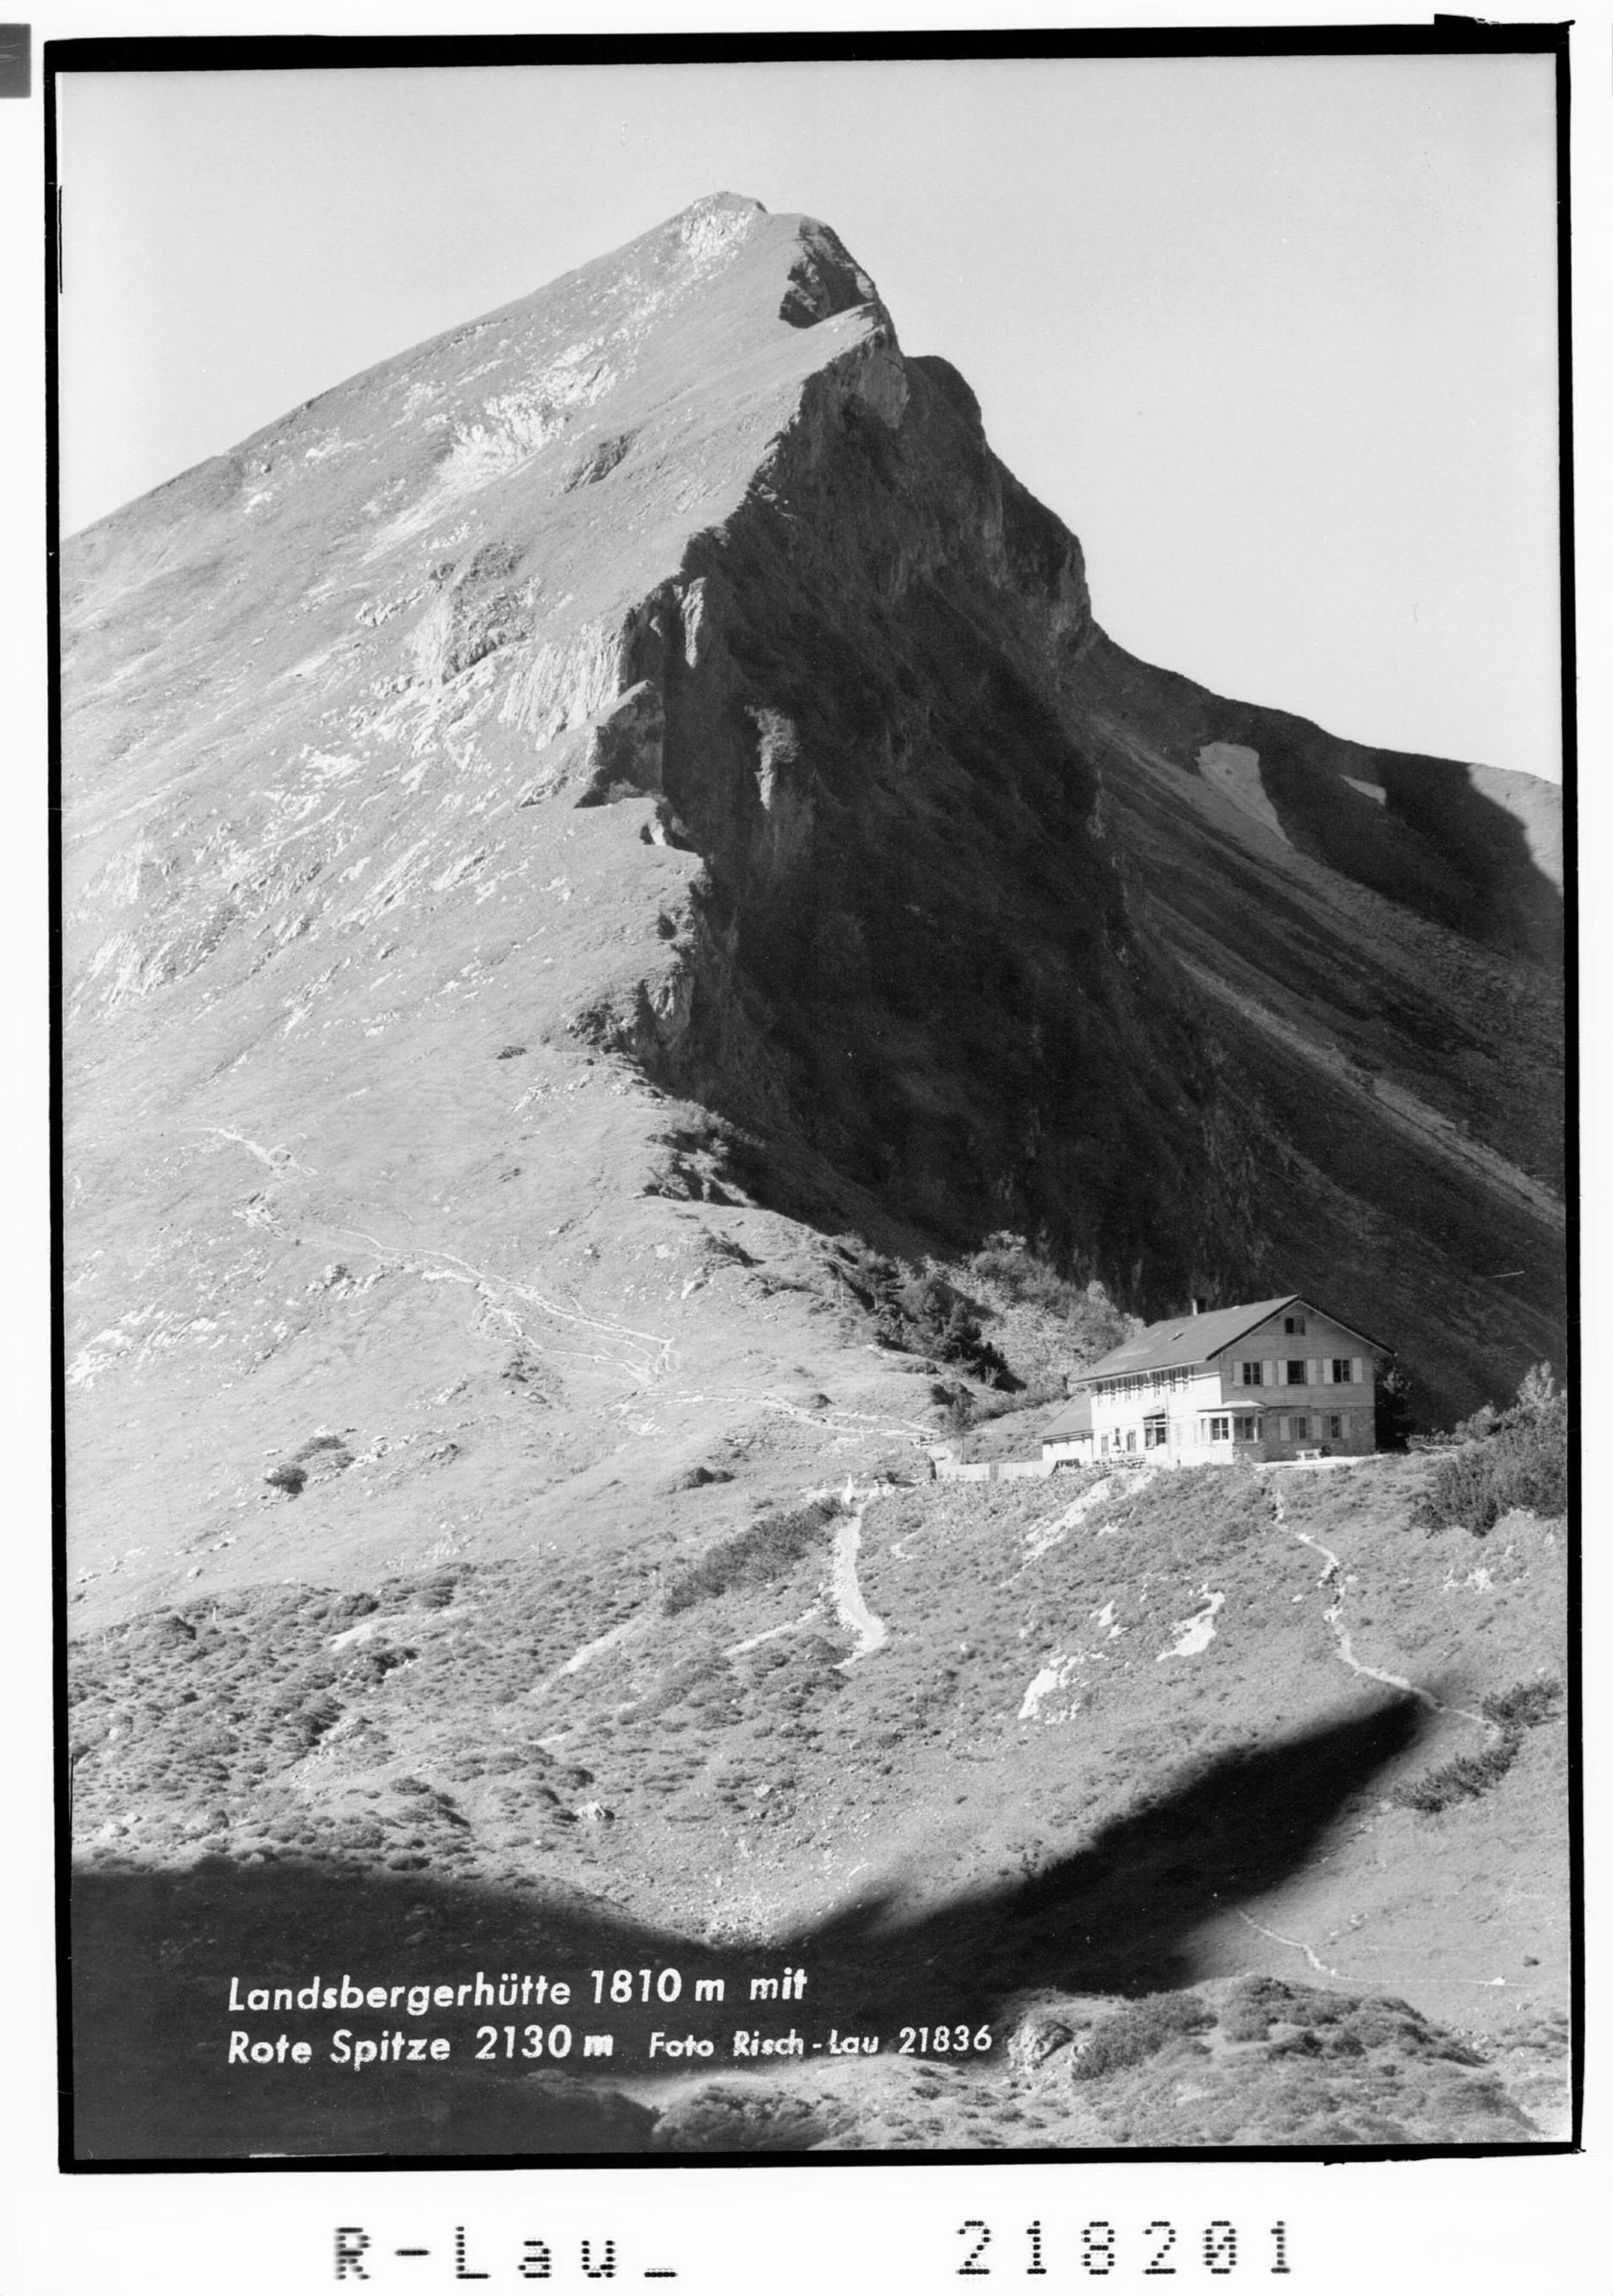 Landsbergerhütte 1810 m mit Rote Spitze 2130 m></div>


    <hr>
    <div class=